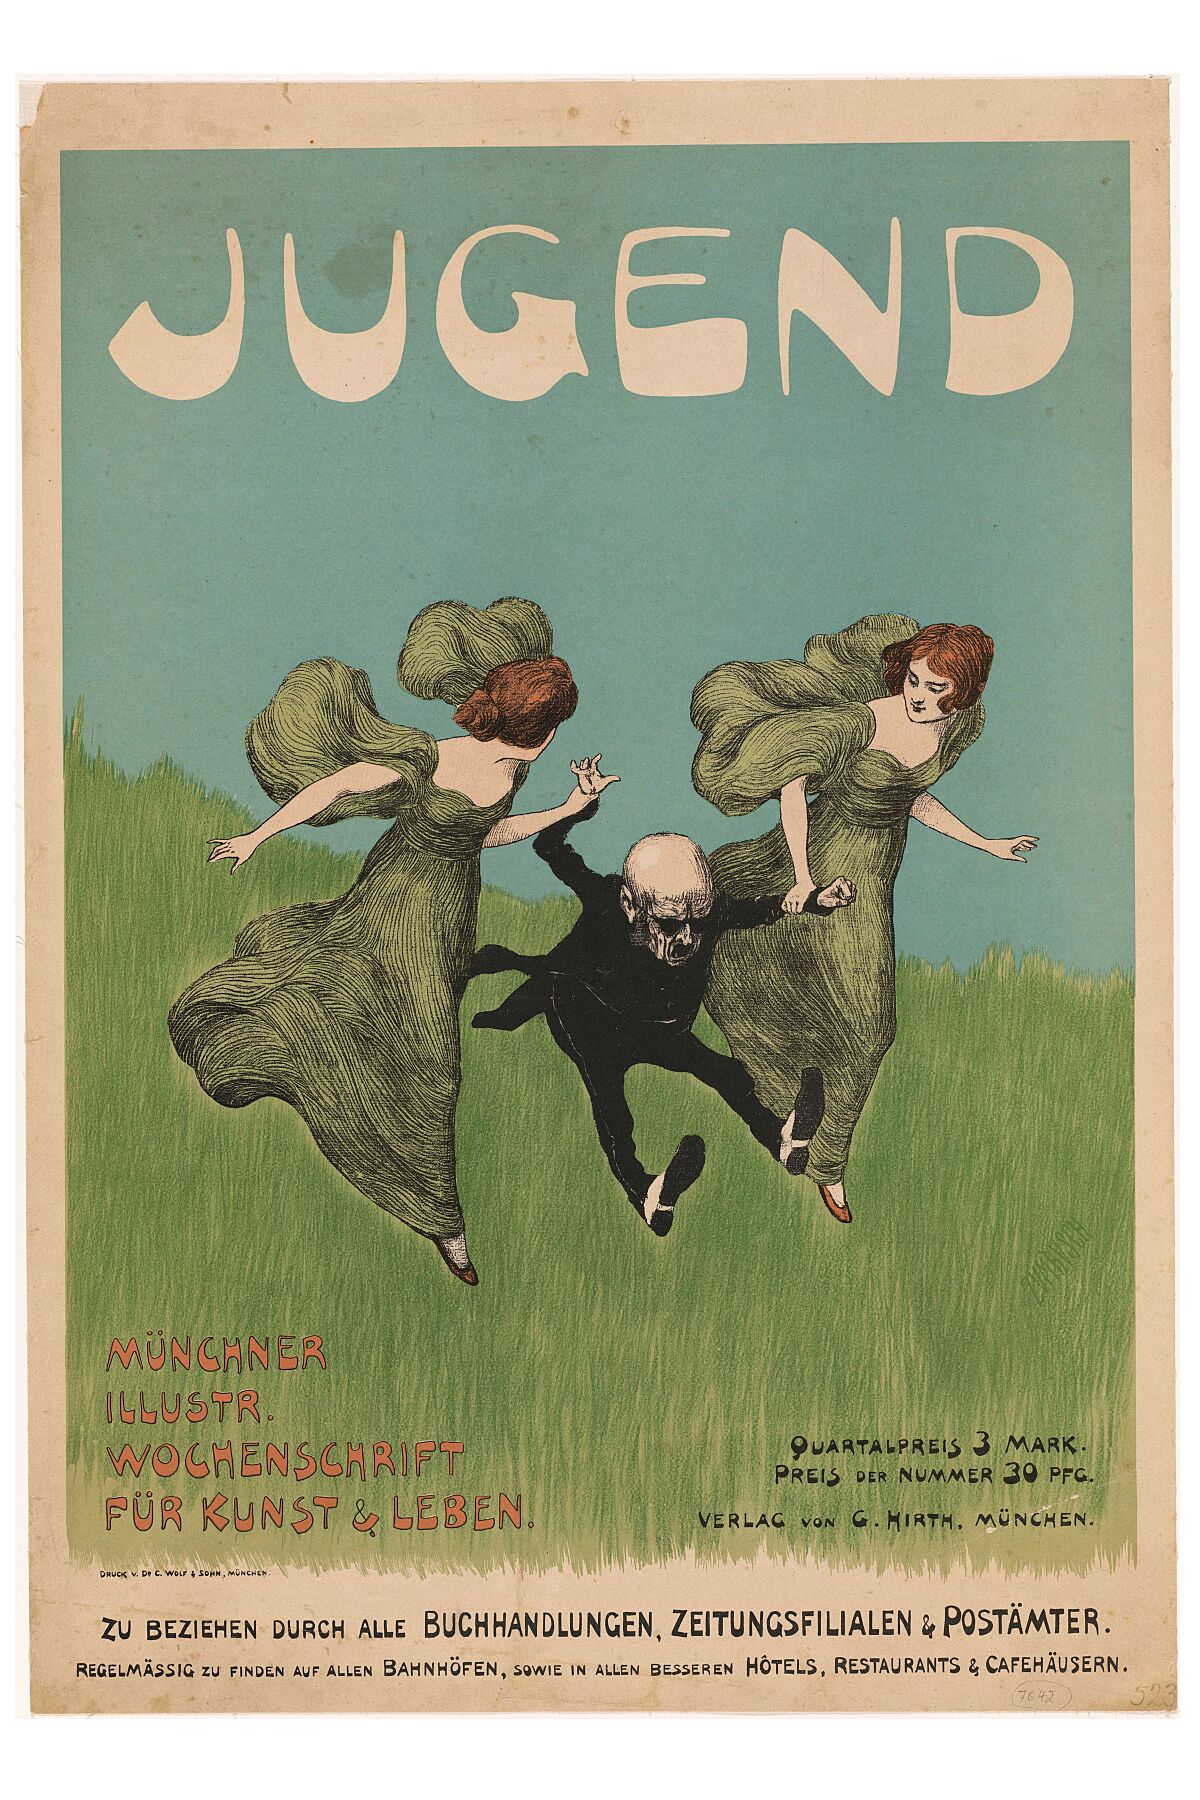  Poster for the magazine Jugend, Ludwig von Zumbusch, 1896